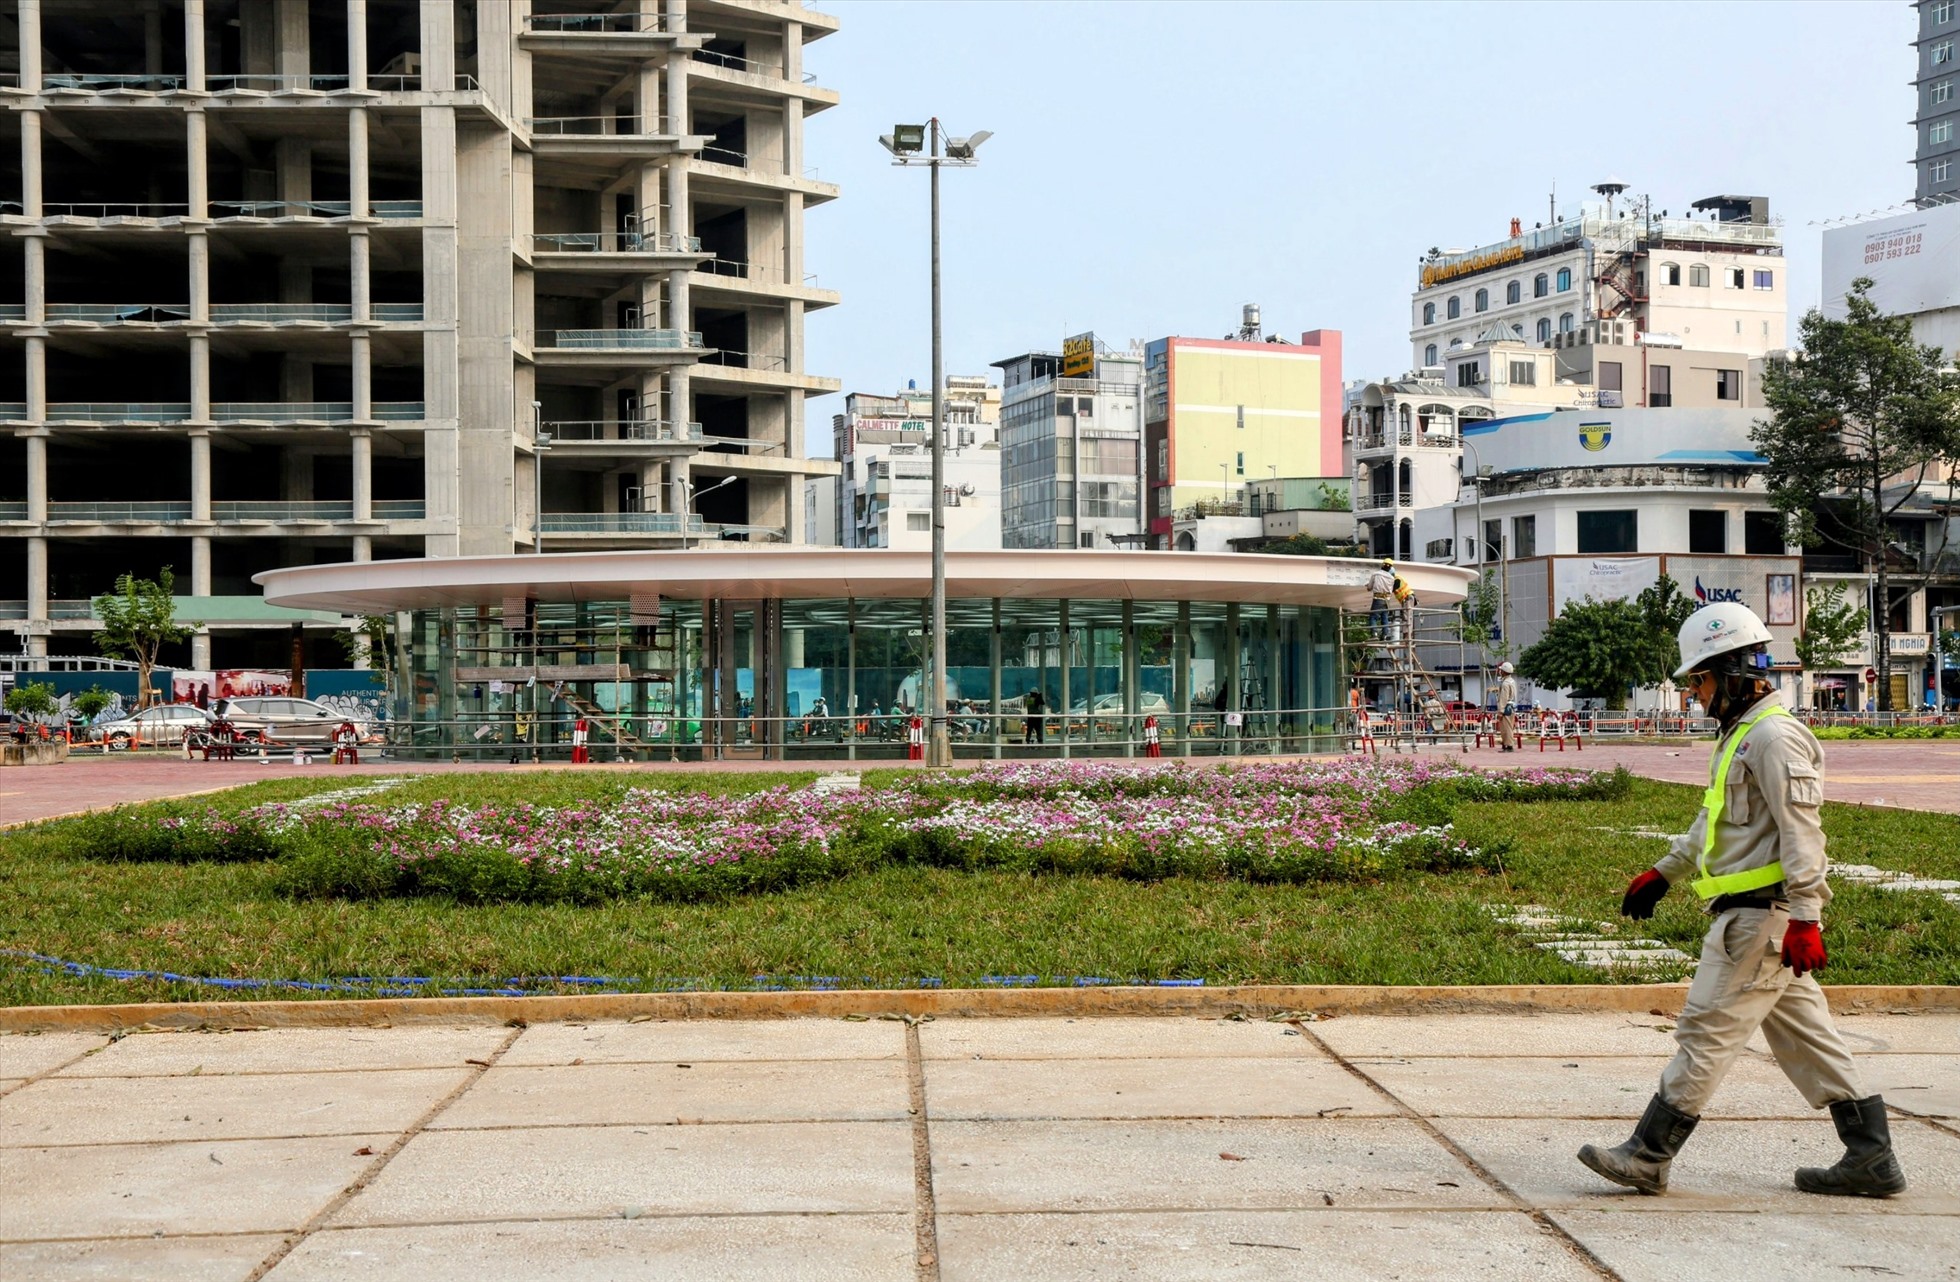 Điểm nổi bật của tuyến metro số 1 là nhà ga Trung tâm Bến Thành được thiết kế ngầm dài 236 m, rộng 60 m, độ sâu khoảng 32 m, gồm 4 tầng.